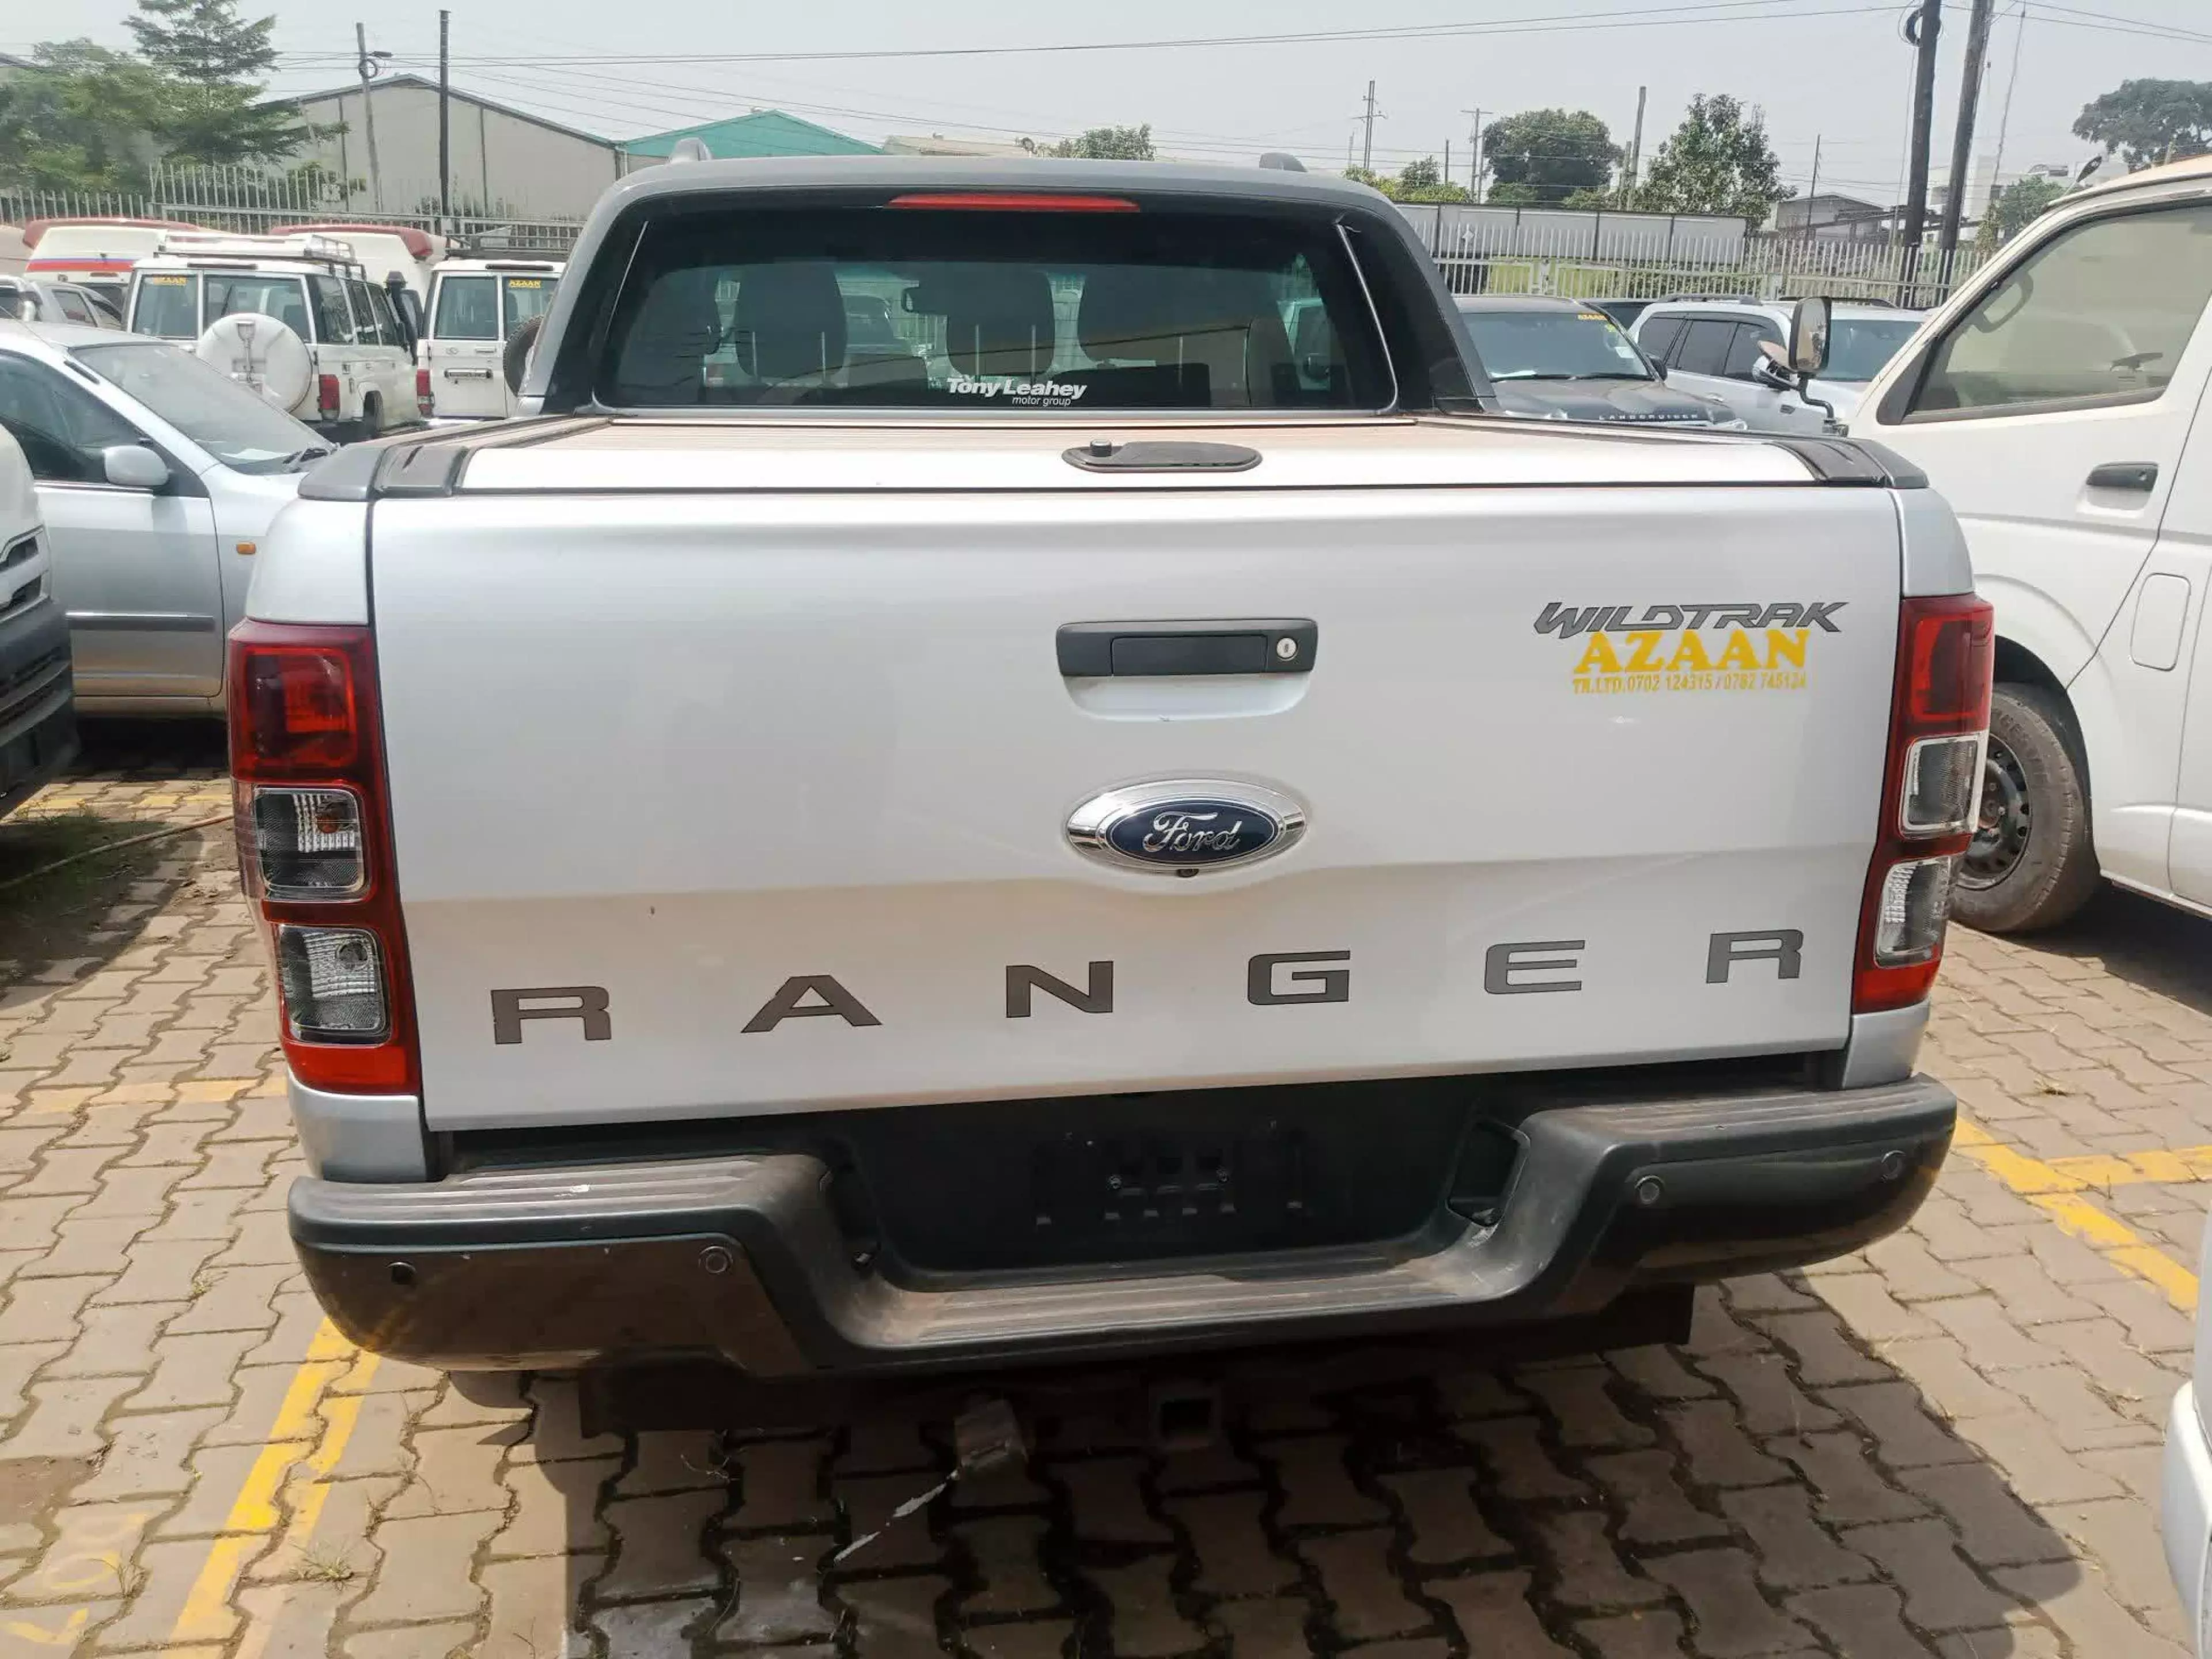 Ford Ranger - 2017